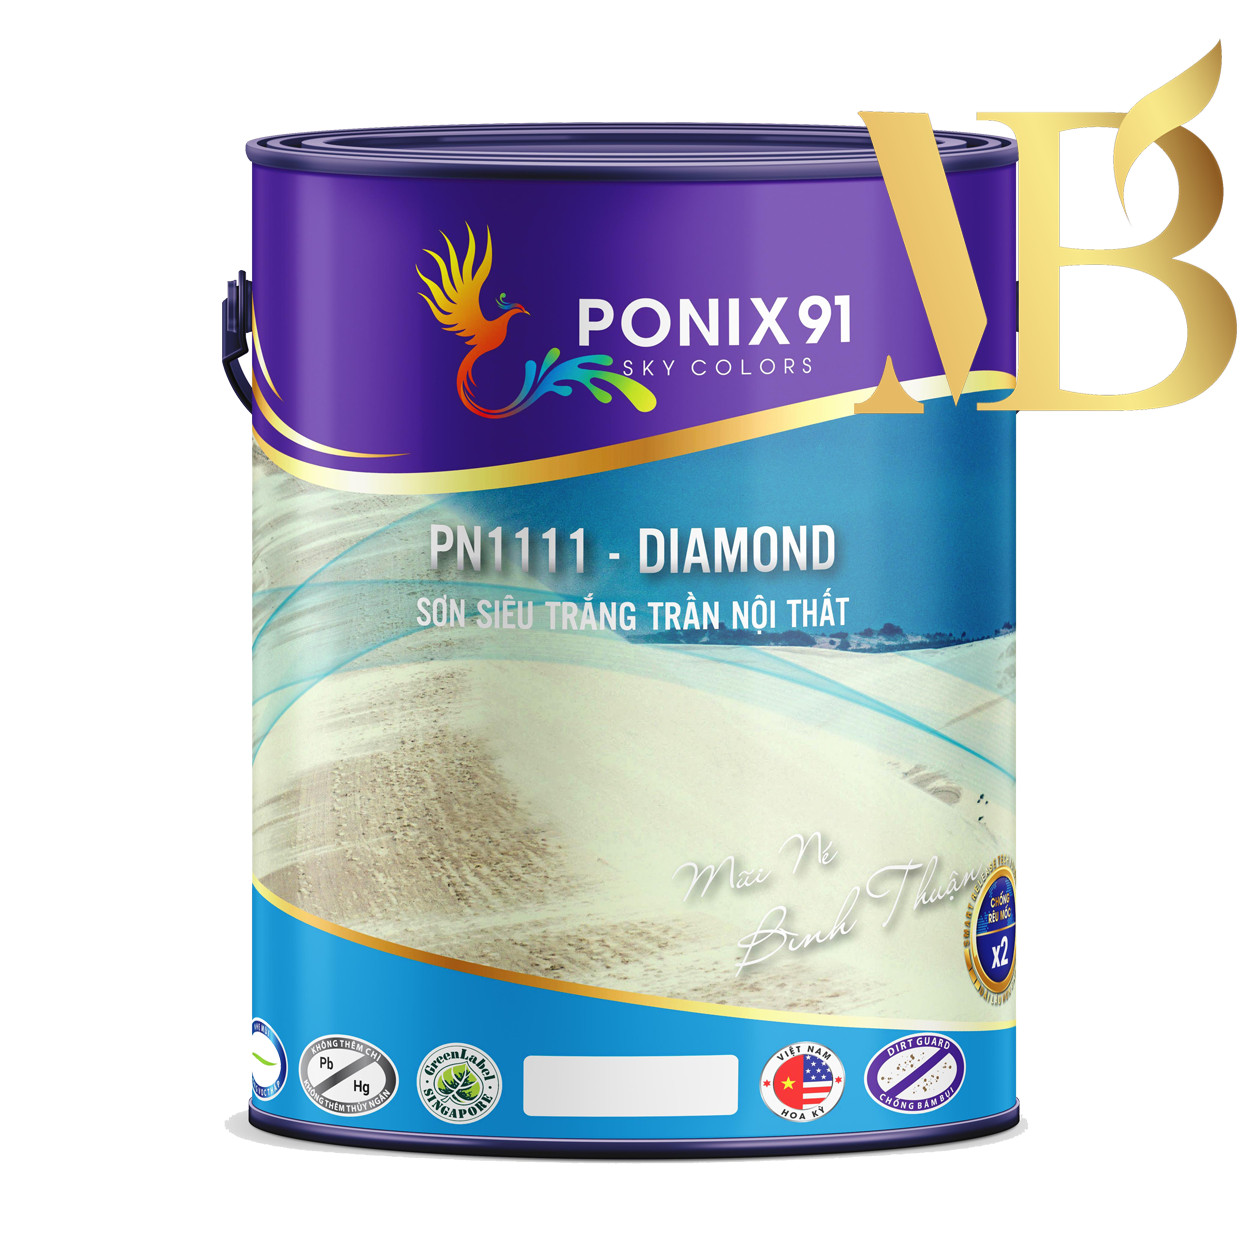 SƠN SIÊU TRẮNG TRẦN NỘI THẤT PONIX91 - PN1111 - DIAMOND